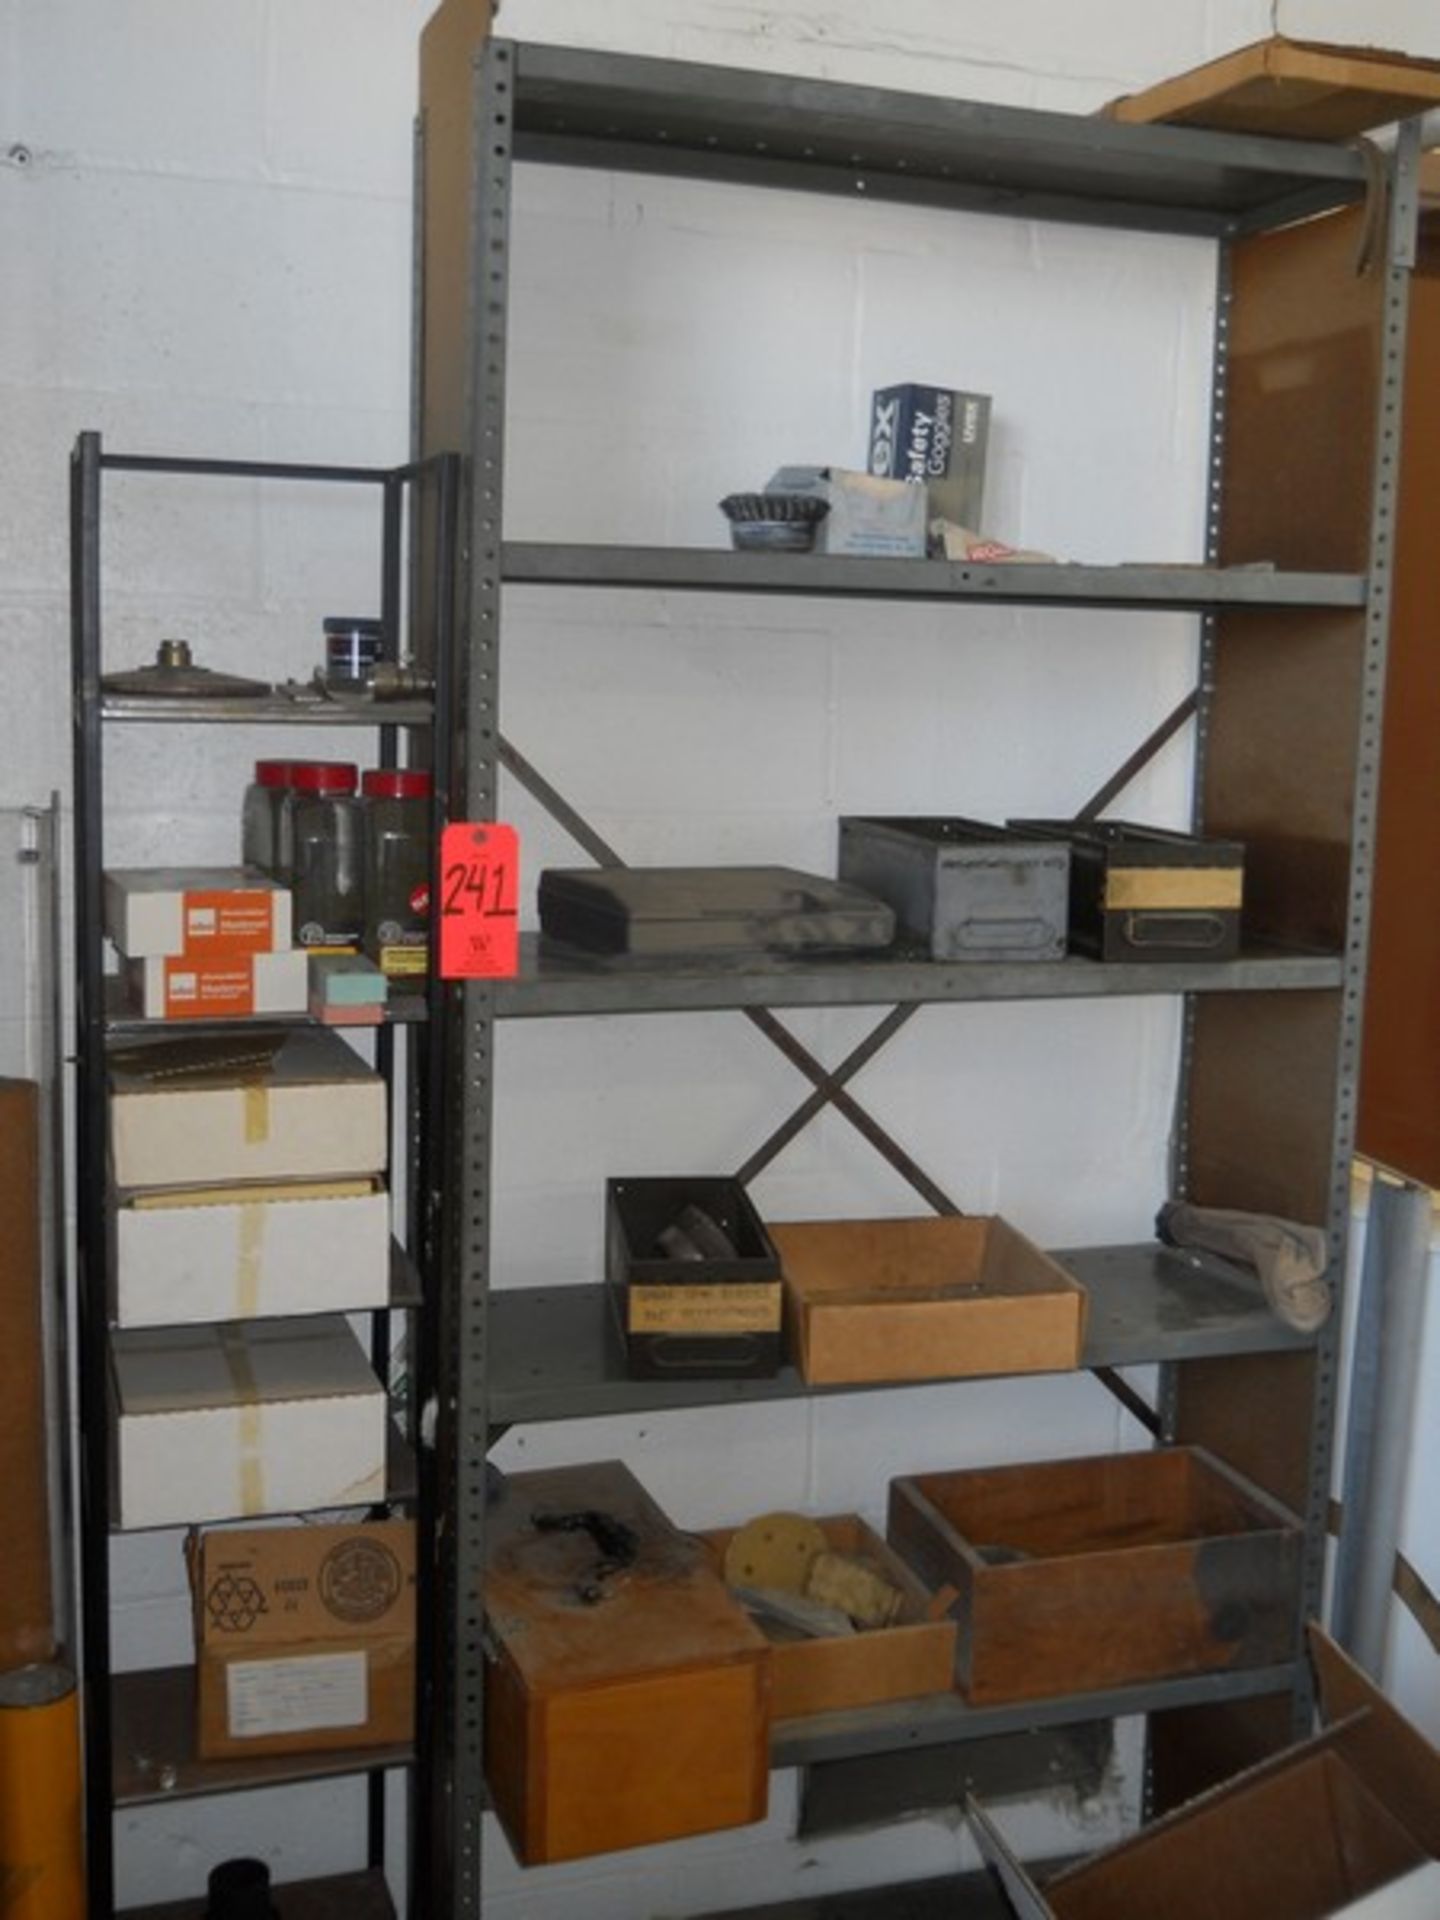 Lot - Shop Shelf Unit & Contents